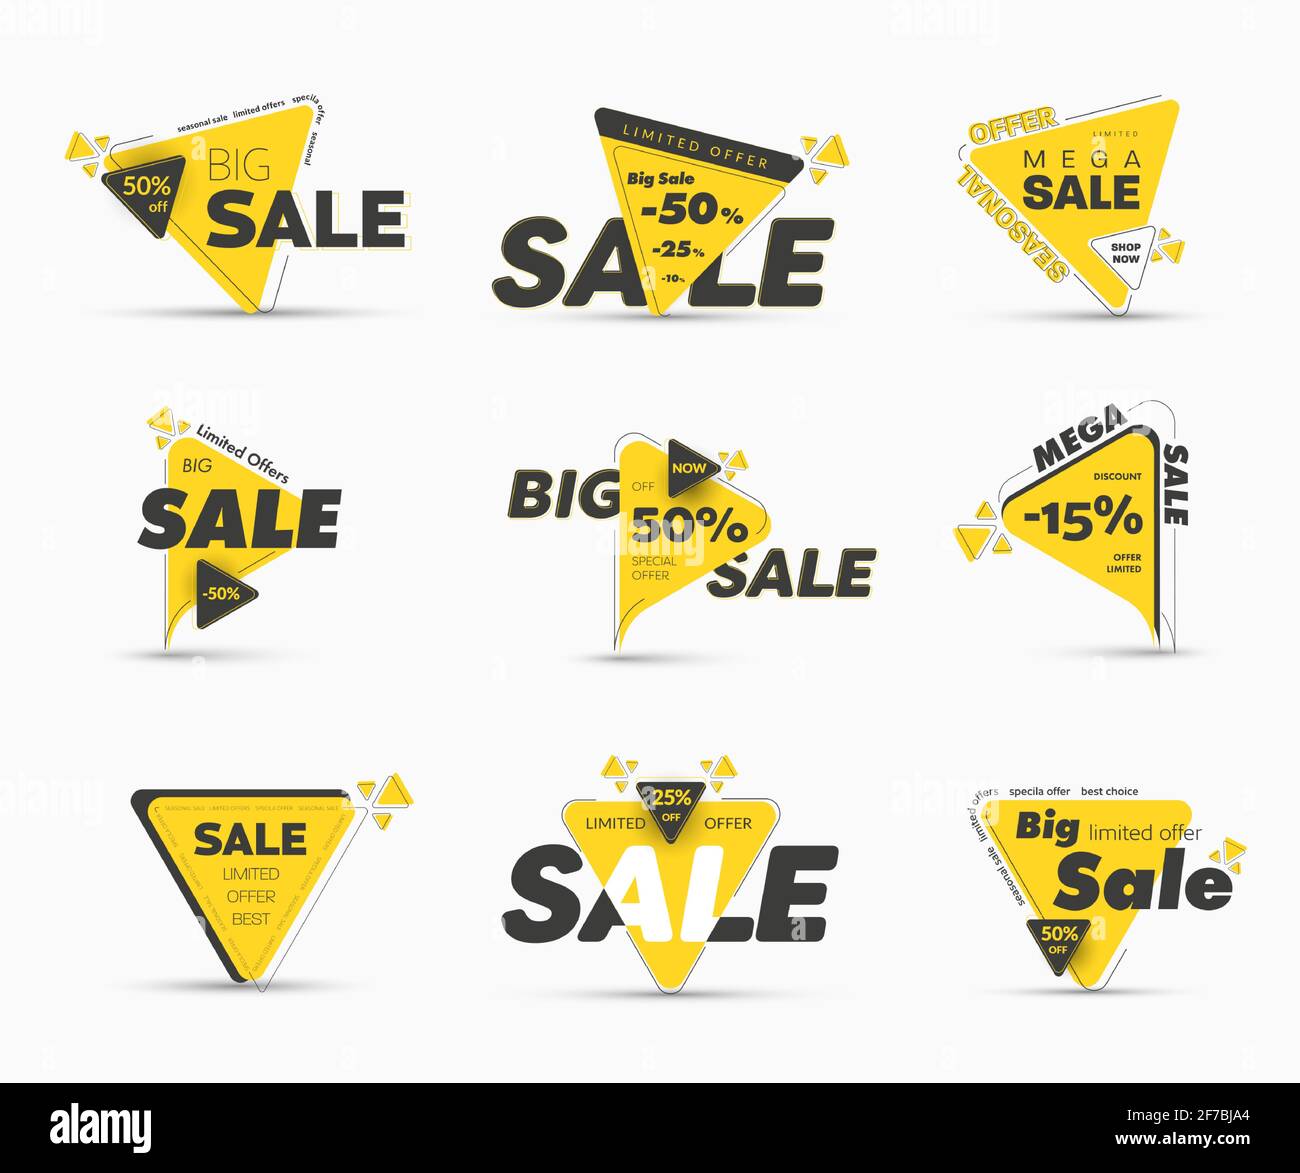 Modelli di etichette vettoriali triangolari nere e gialle con sconti percentuali per grandi vendite. Set di banner moderni per mega offerte speciali e stagionali. Illustrazione Vettoriale